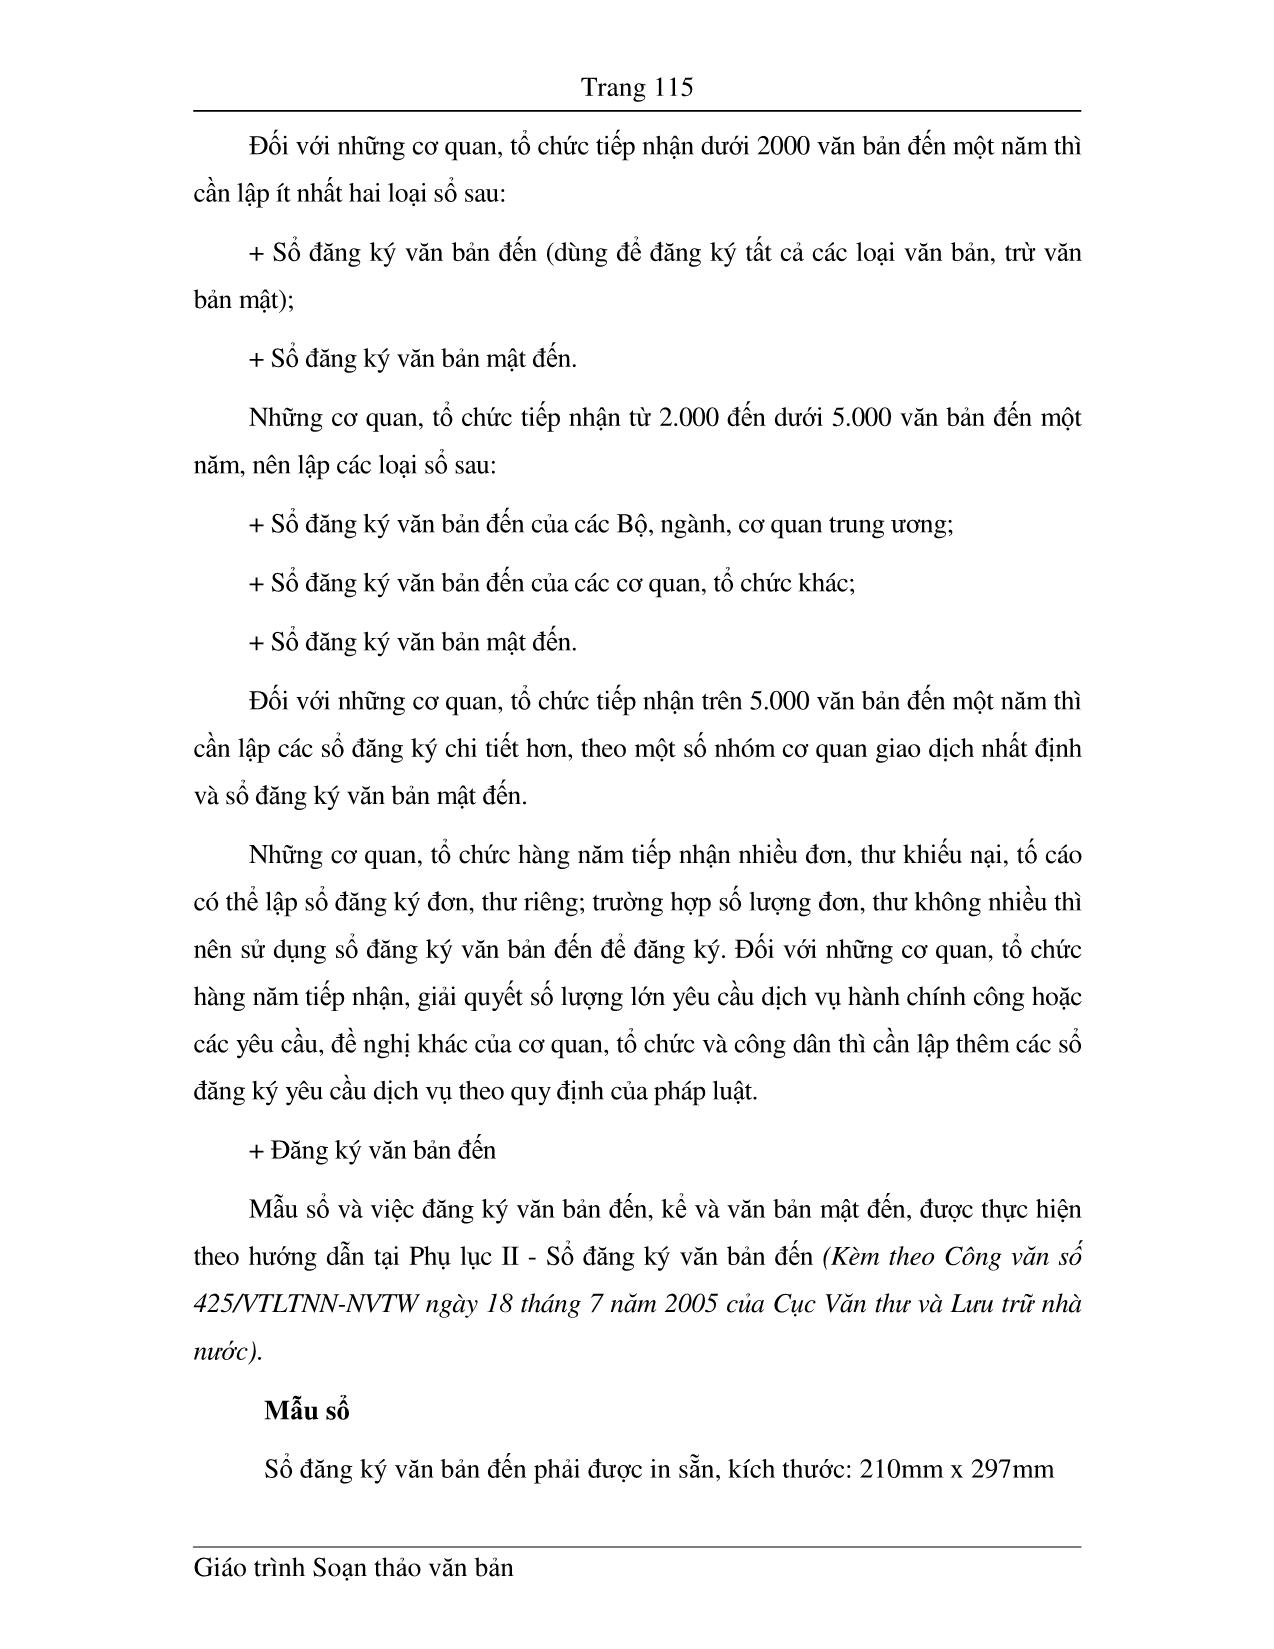 Giáo trình Soạn thảo văn bản (Phần 2) trang 8